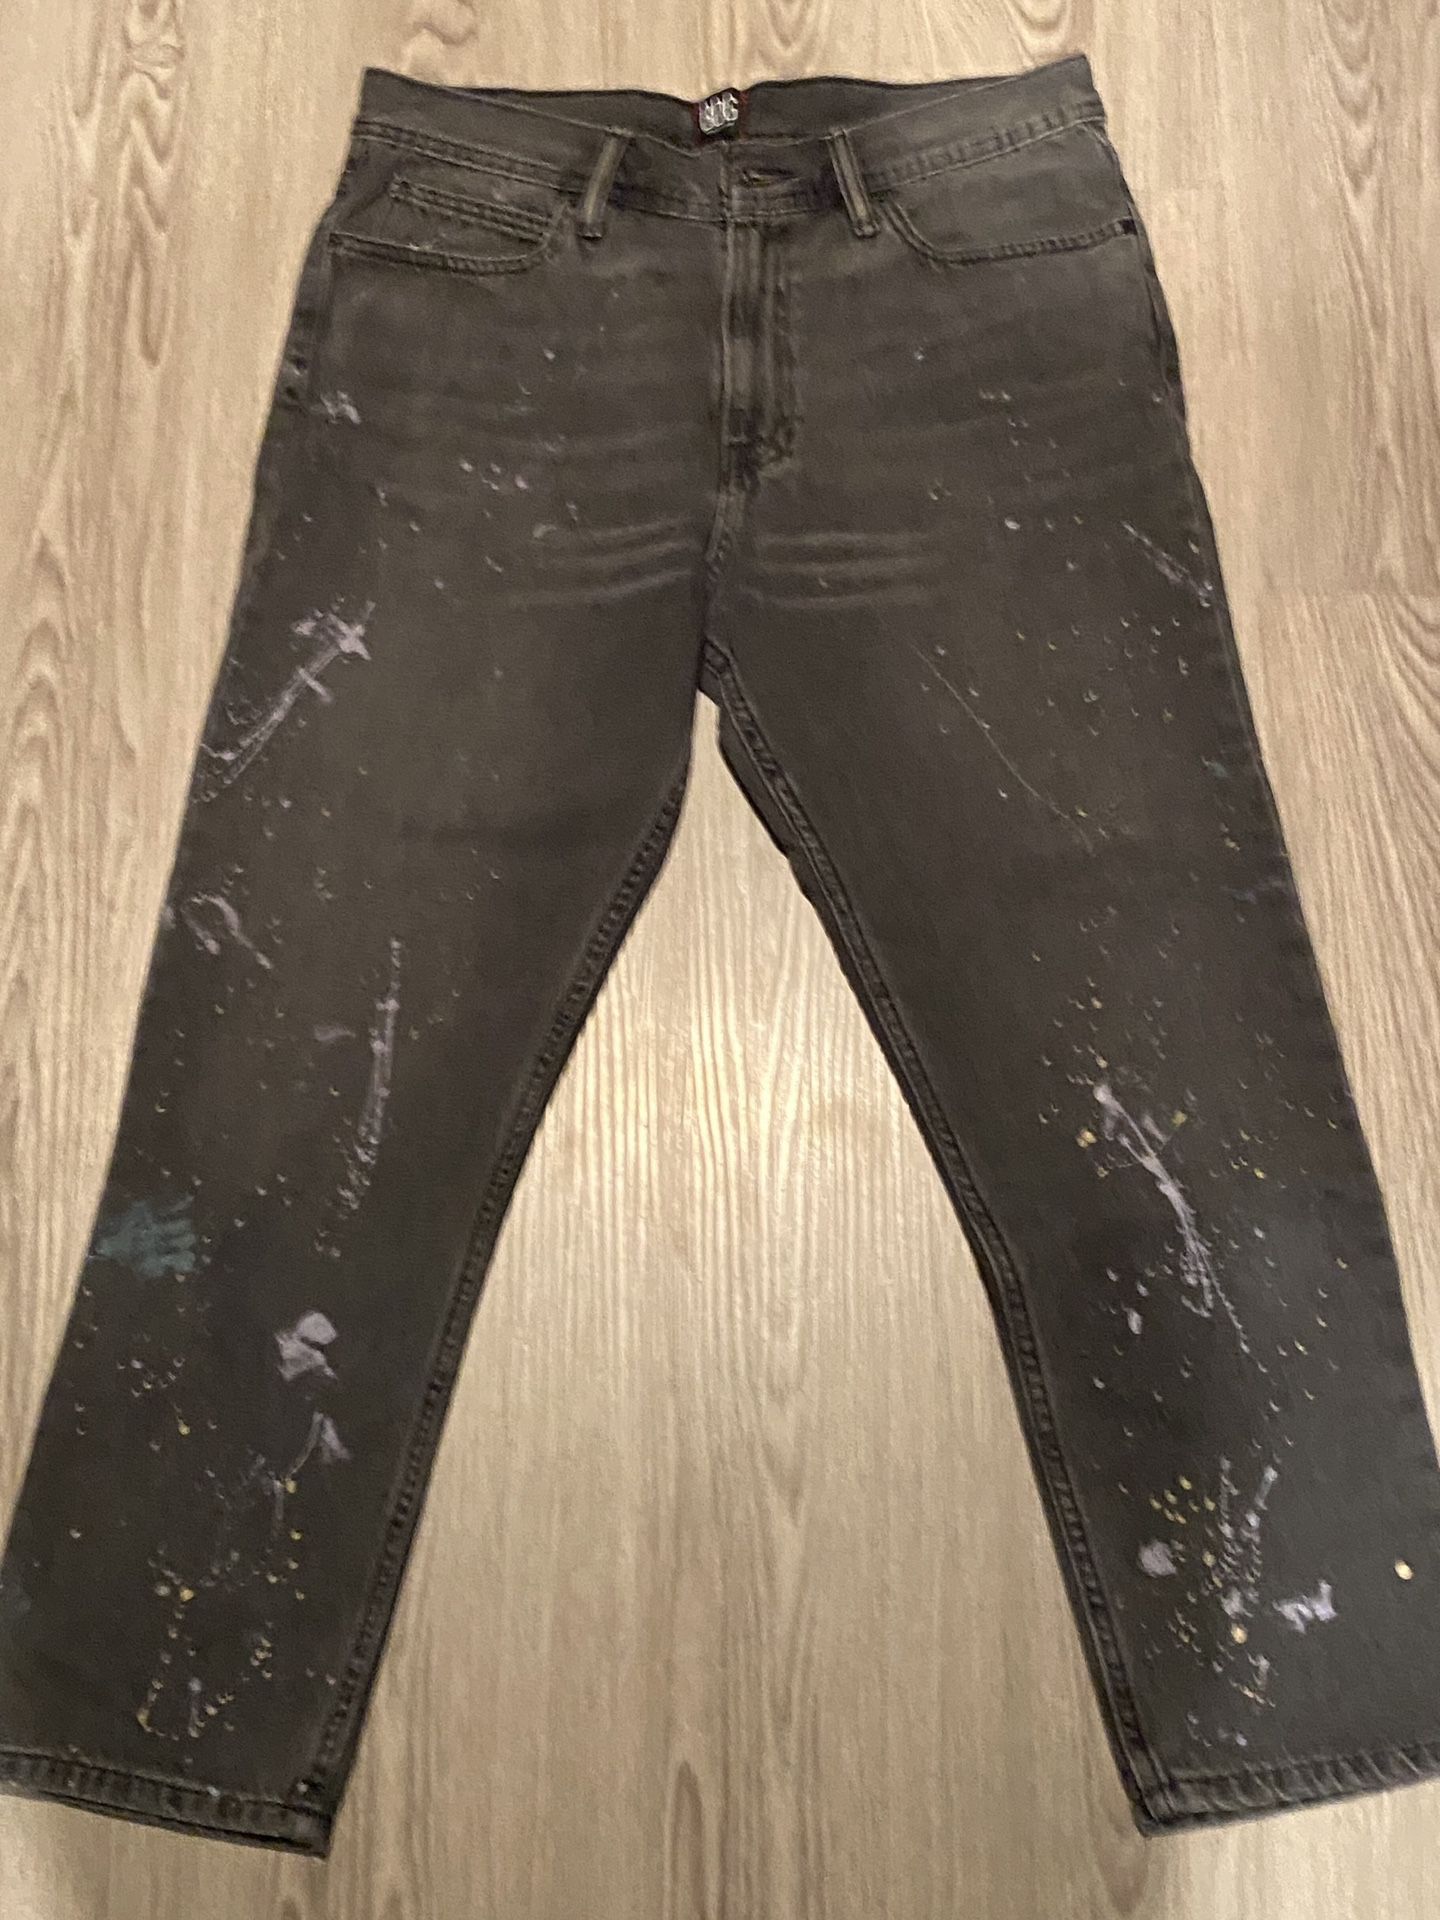 BDG jeans Paint Splatter 32x30 Good Condition (Authentic)